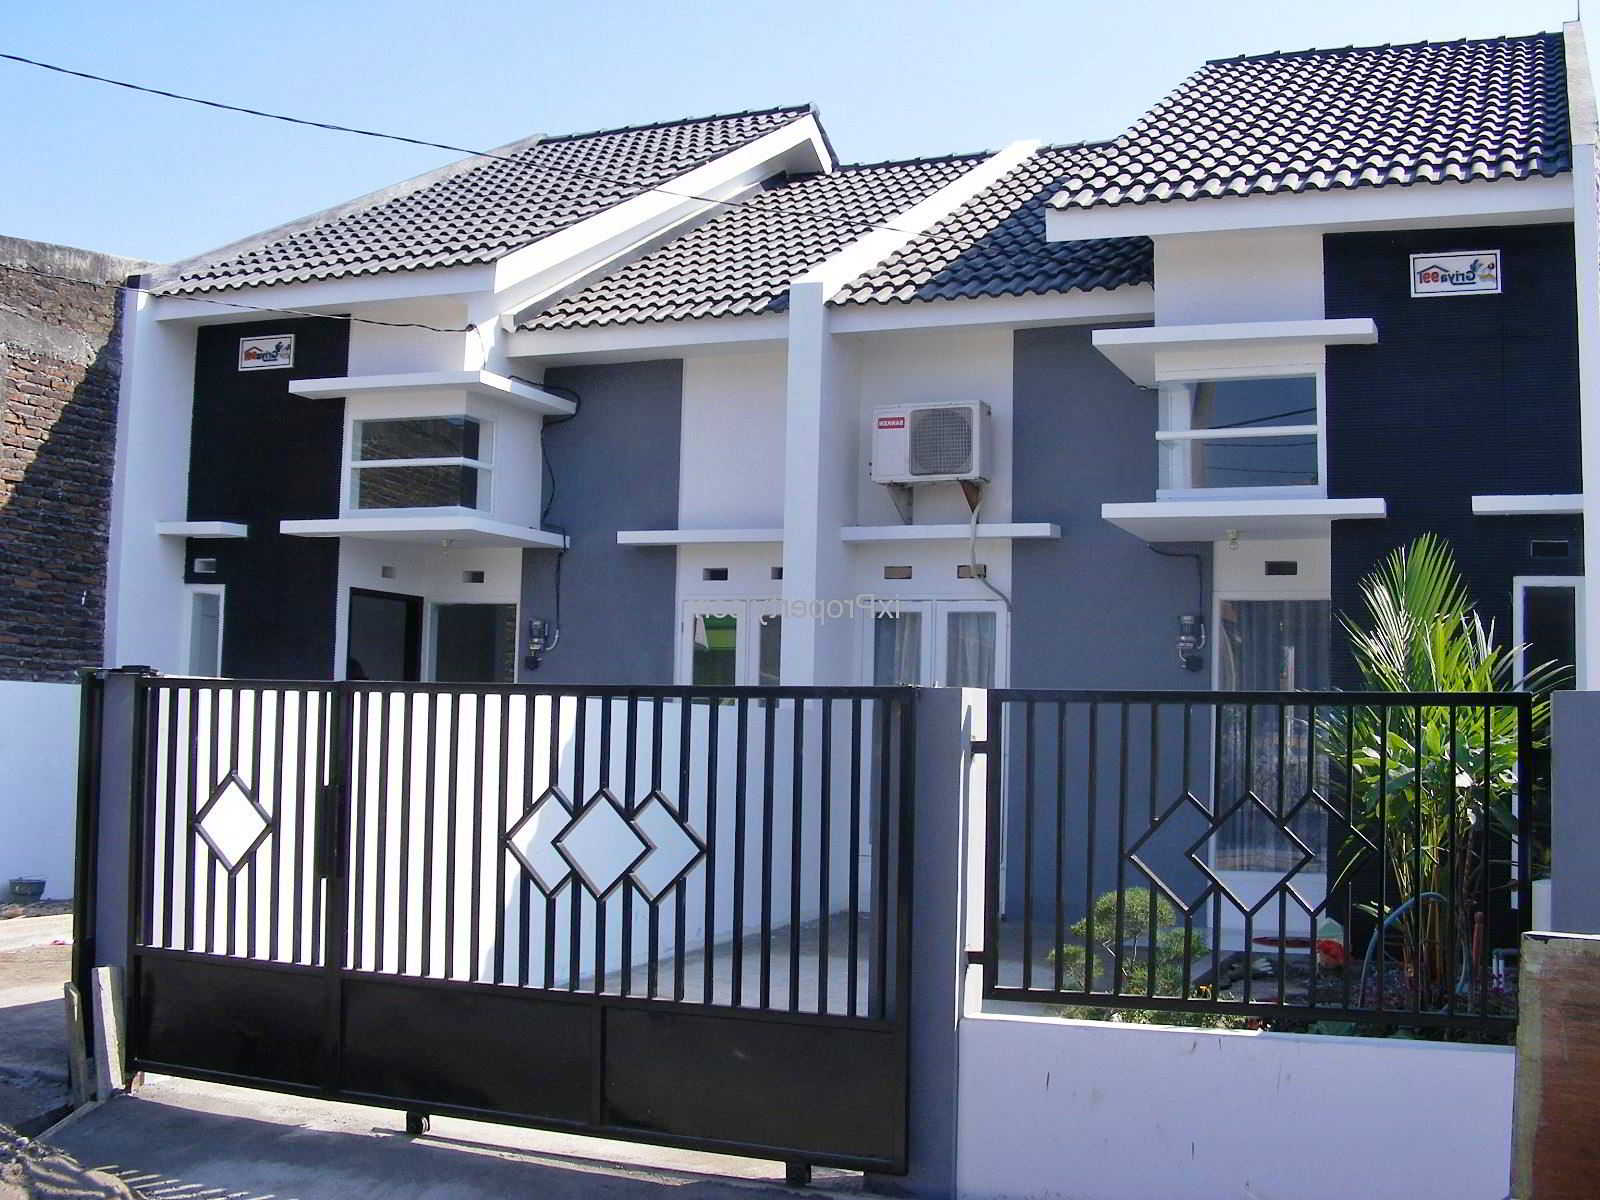 60+ contoh model desain pagar rumah minimalis modern terbaru